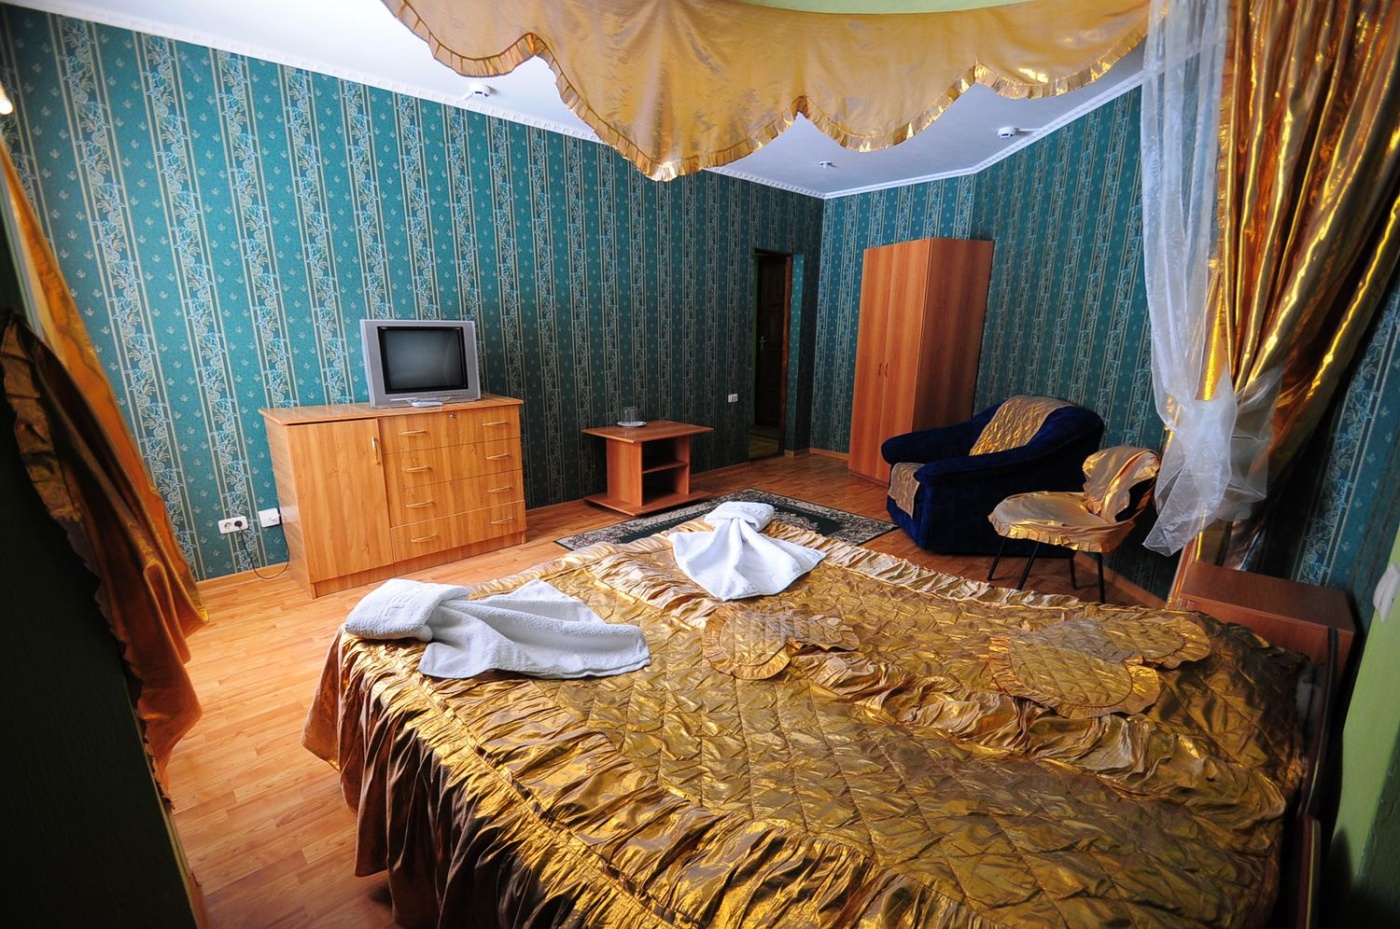  Отель «Шахерезада» Кабардино-Балкарская Республика Полулюкс, фото 3